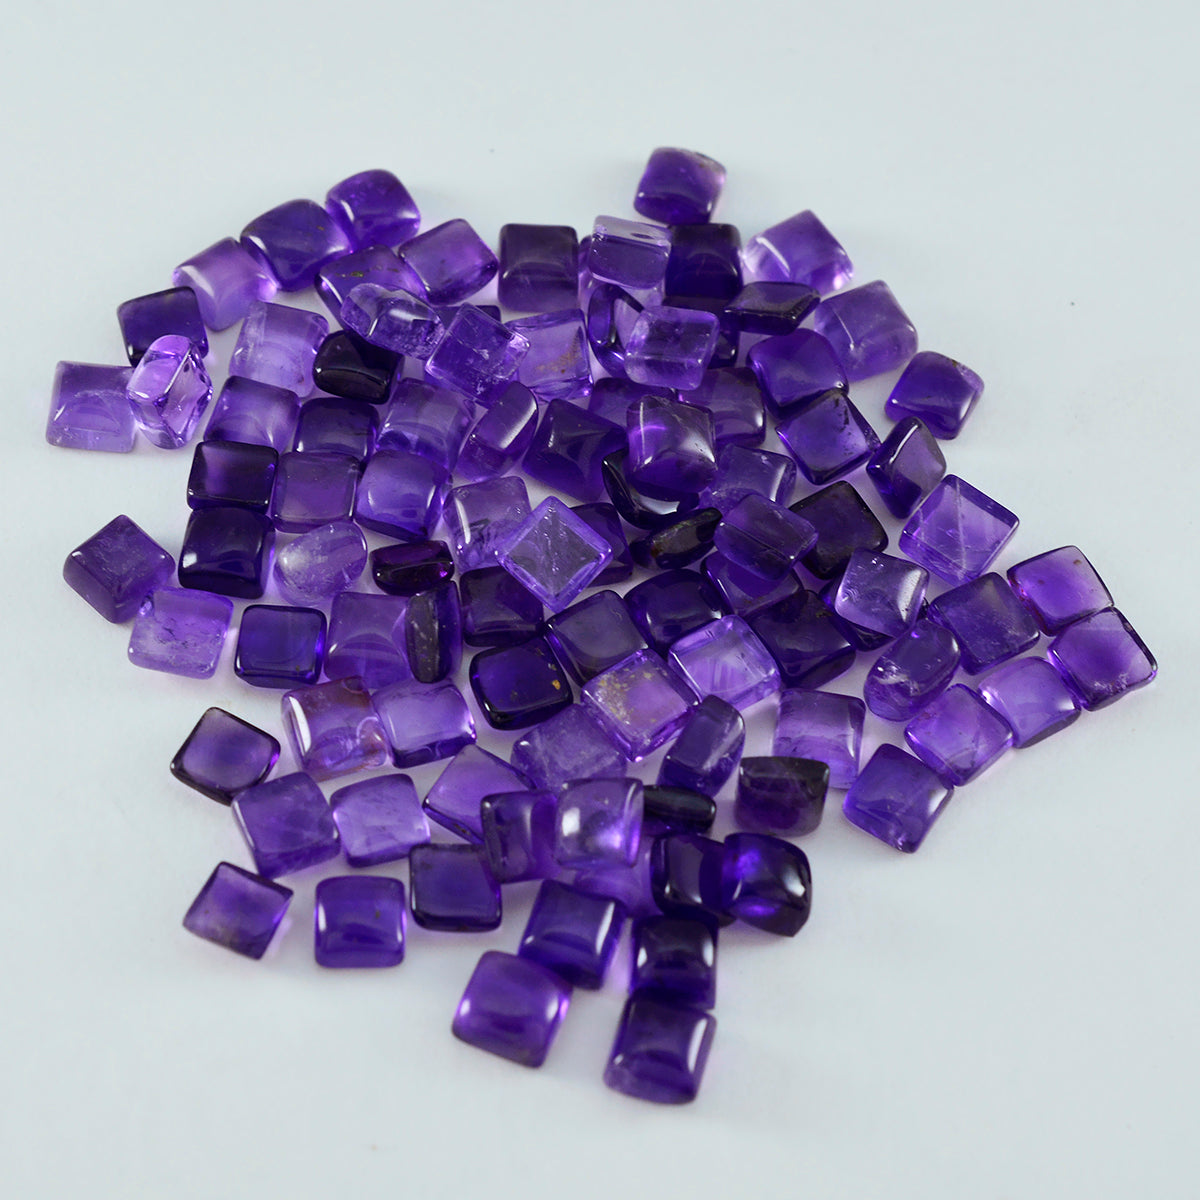 Riyogems 1 pieza cabujón de amatista púrpura 6x6mm forma cuadrada hermosas gemas de calidad